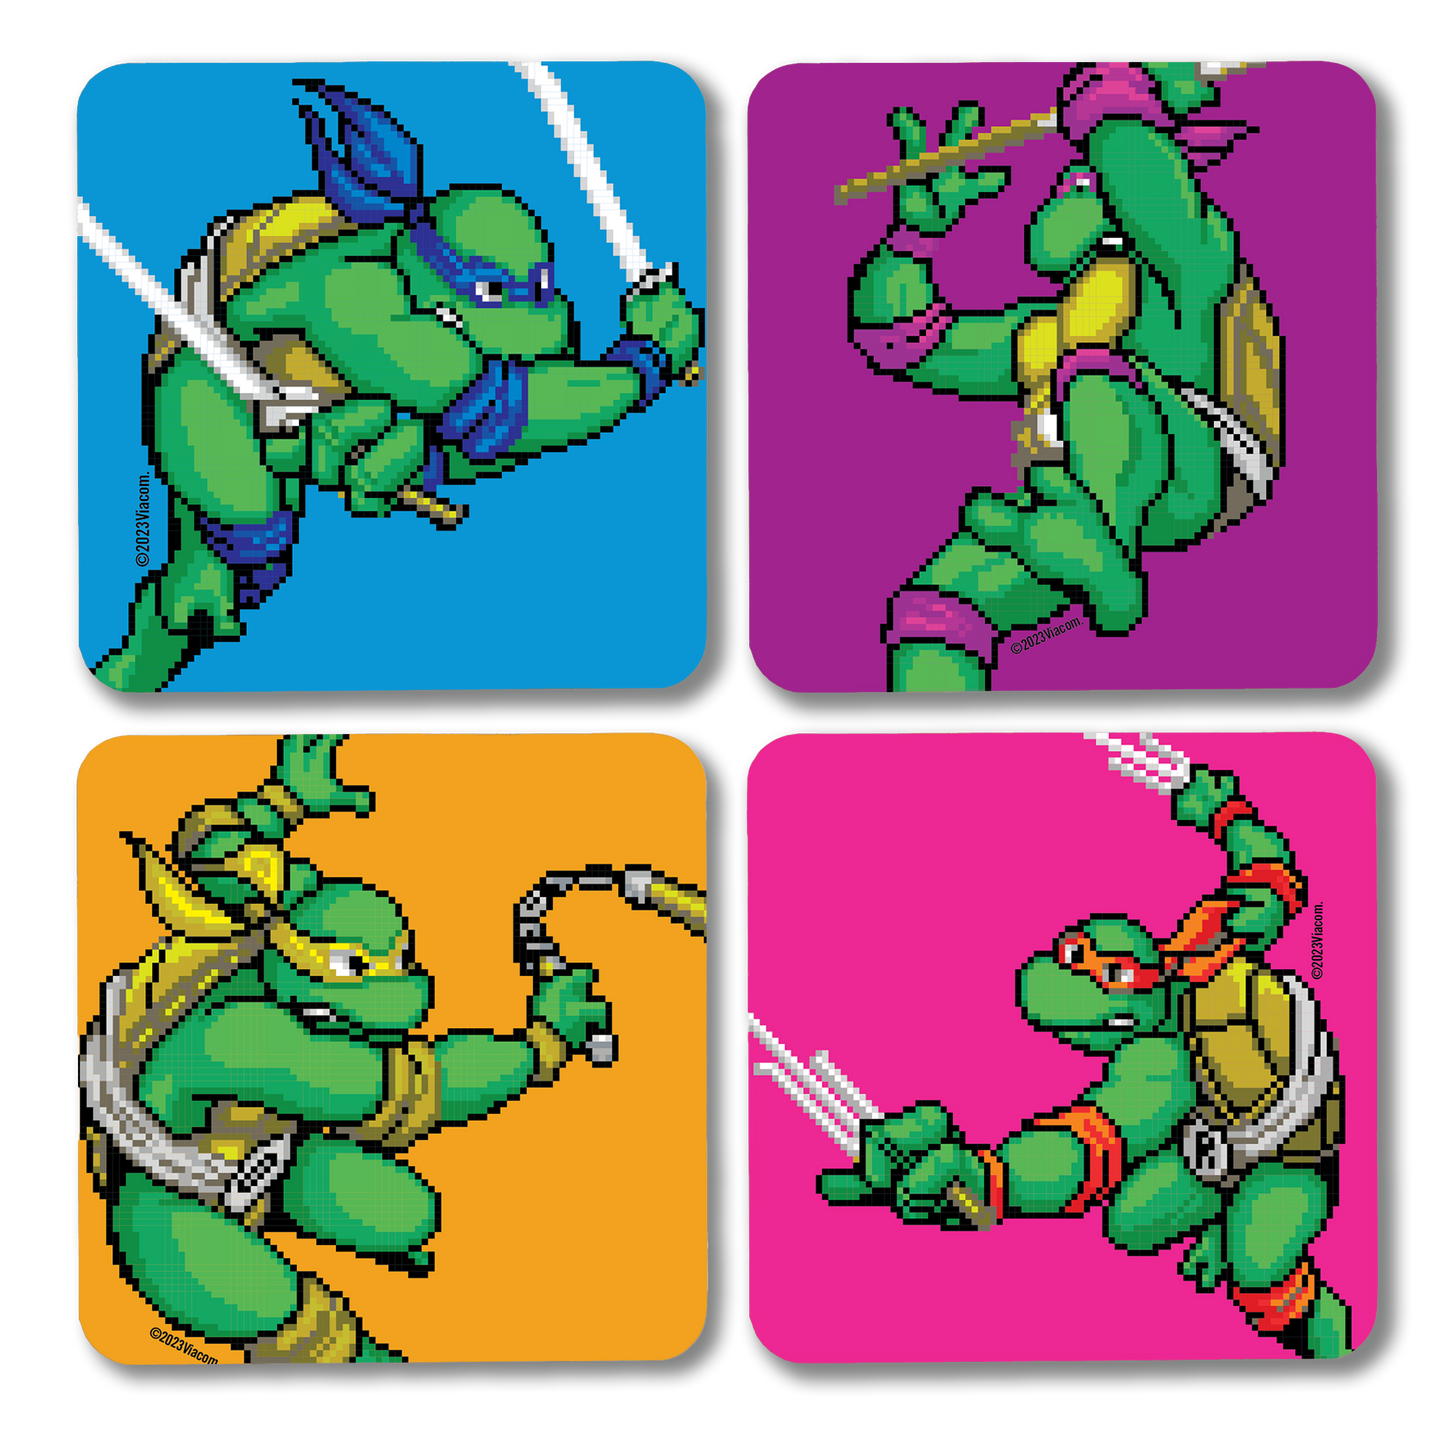 Teenage Mutant Ninja Turtles Ninjas en posición de combate Posavasos con soporte de caoba - Juego de 4